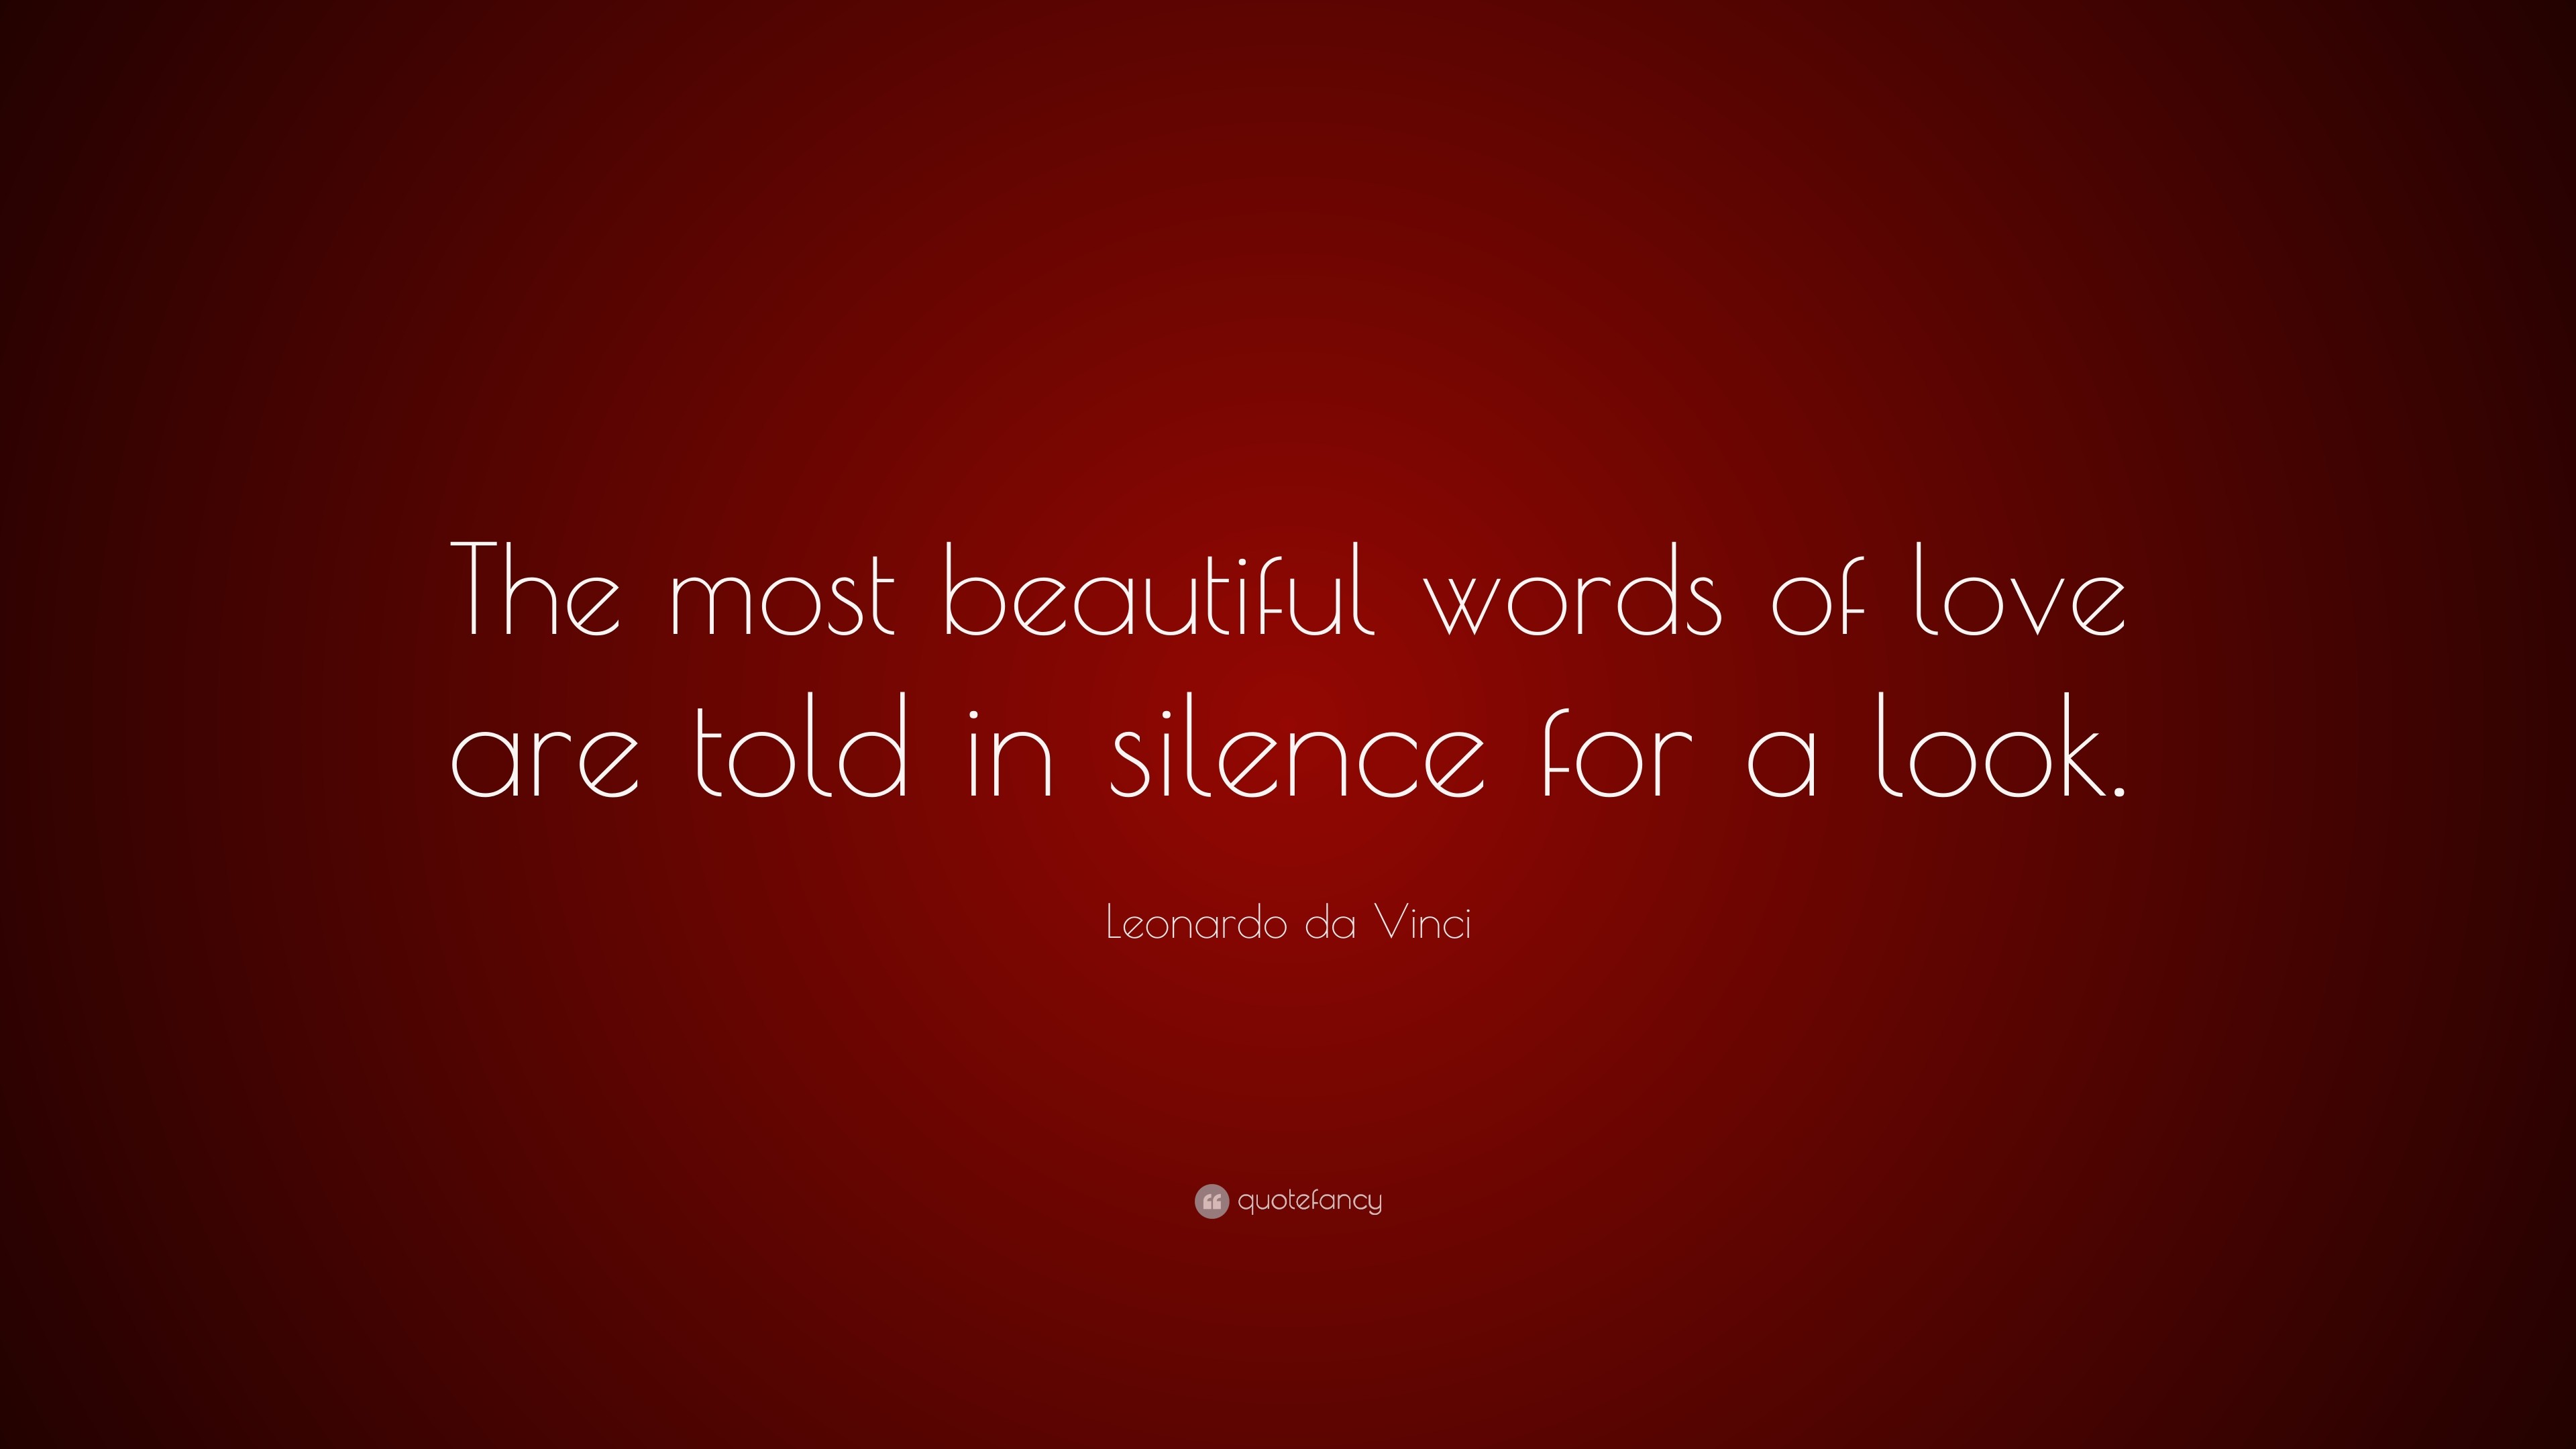 3840x2160 Leonardo da Vinci Quote: “The most beautiful words of love are told in  silence